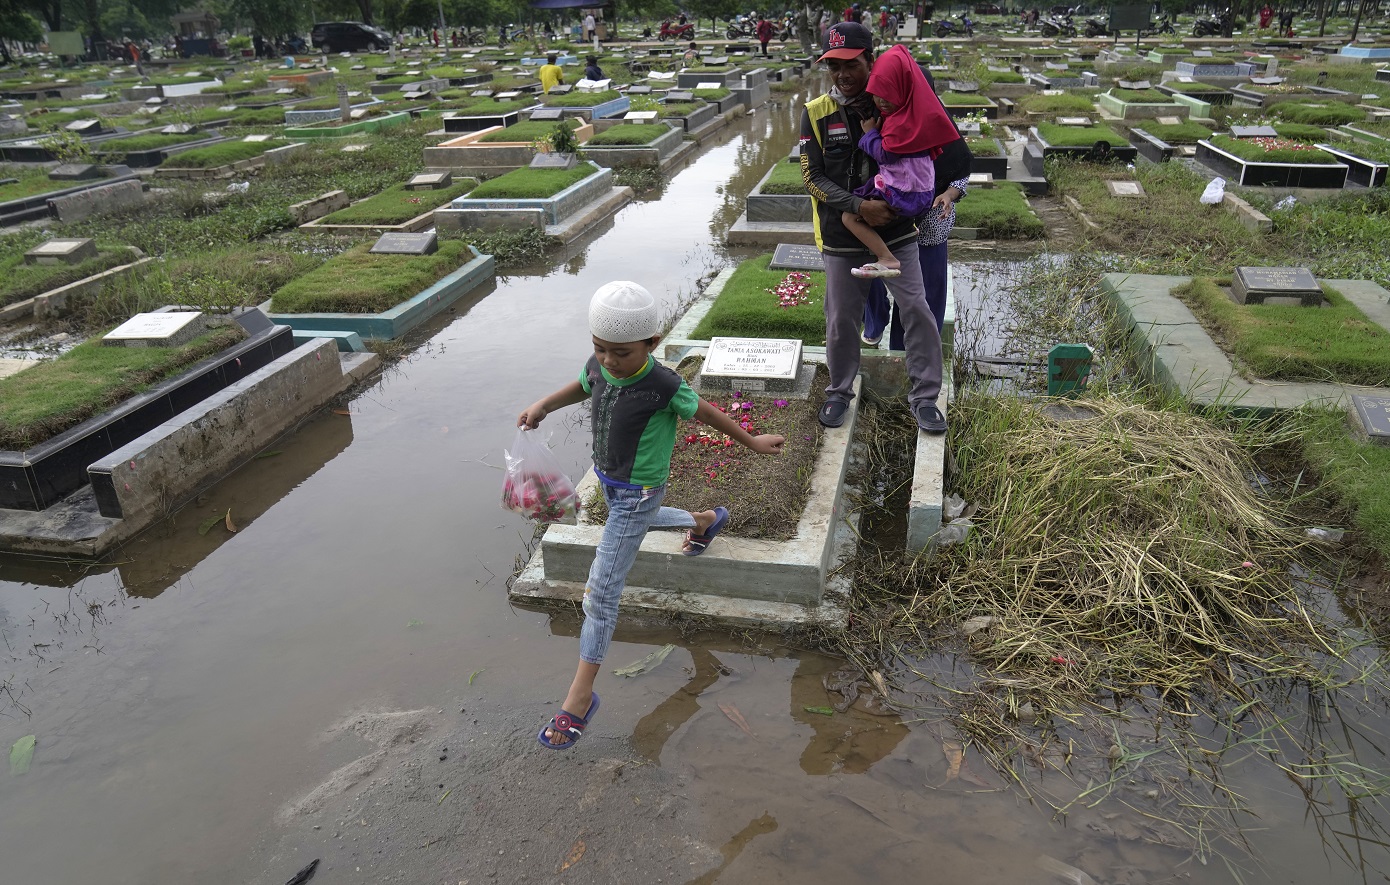 Ινδονησία: Τουλάχιστον 18 νεκροί και 5 αγνοούμενοι από πλημμύρες στο νησί Σουμάτρα